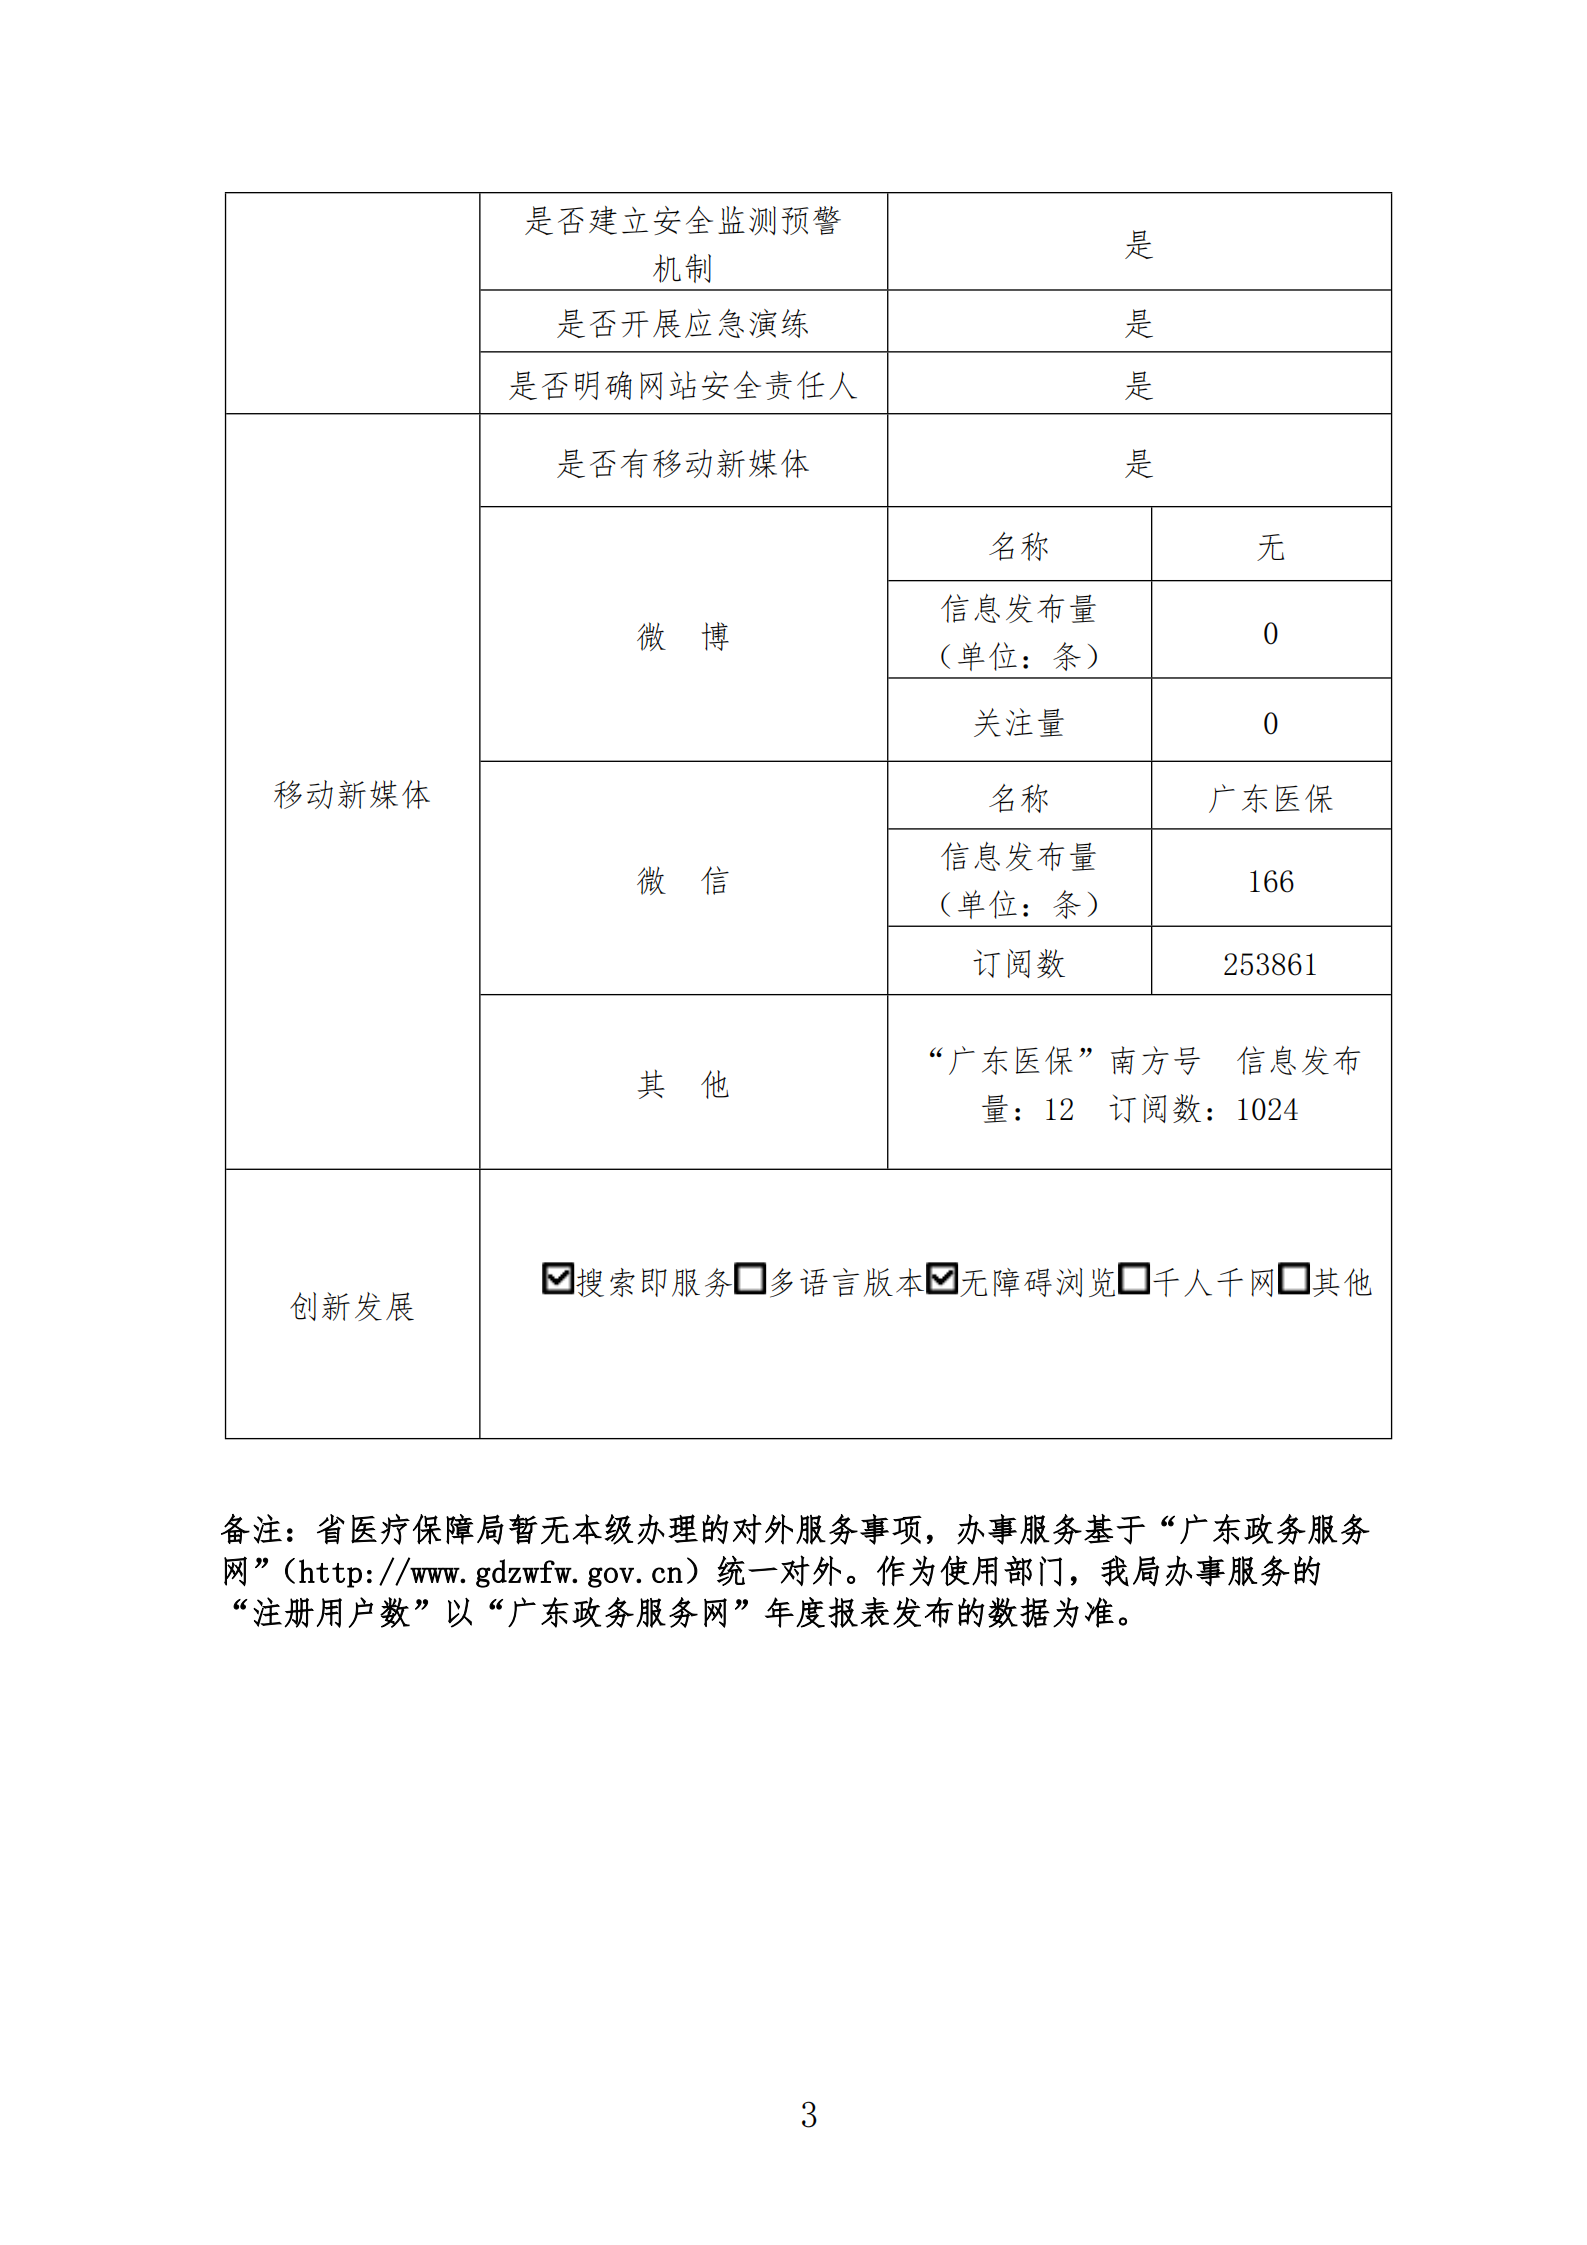 广东省医疗保障局政府网站工作报表（2020年度）_02.png